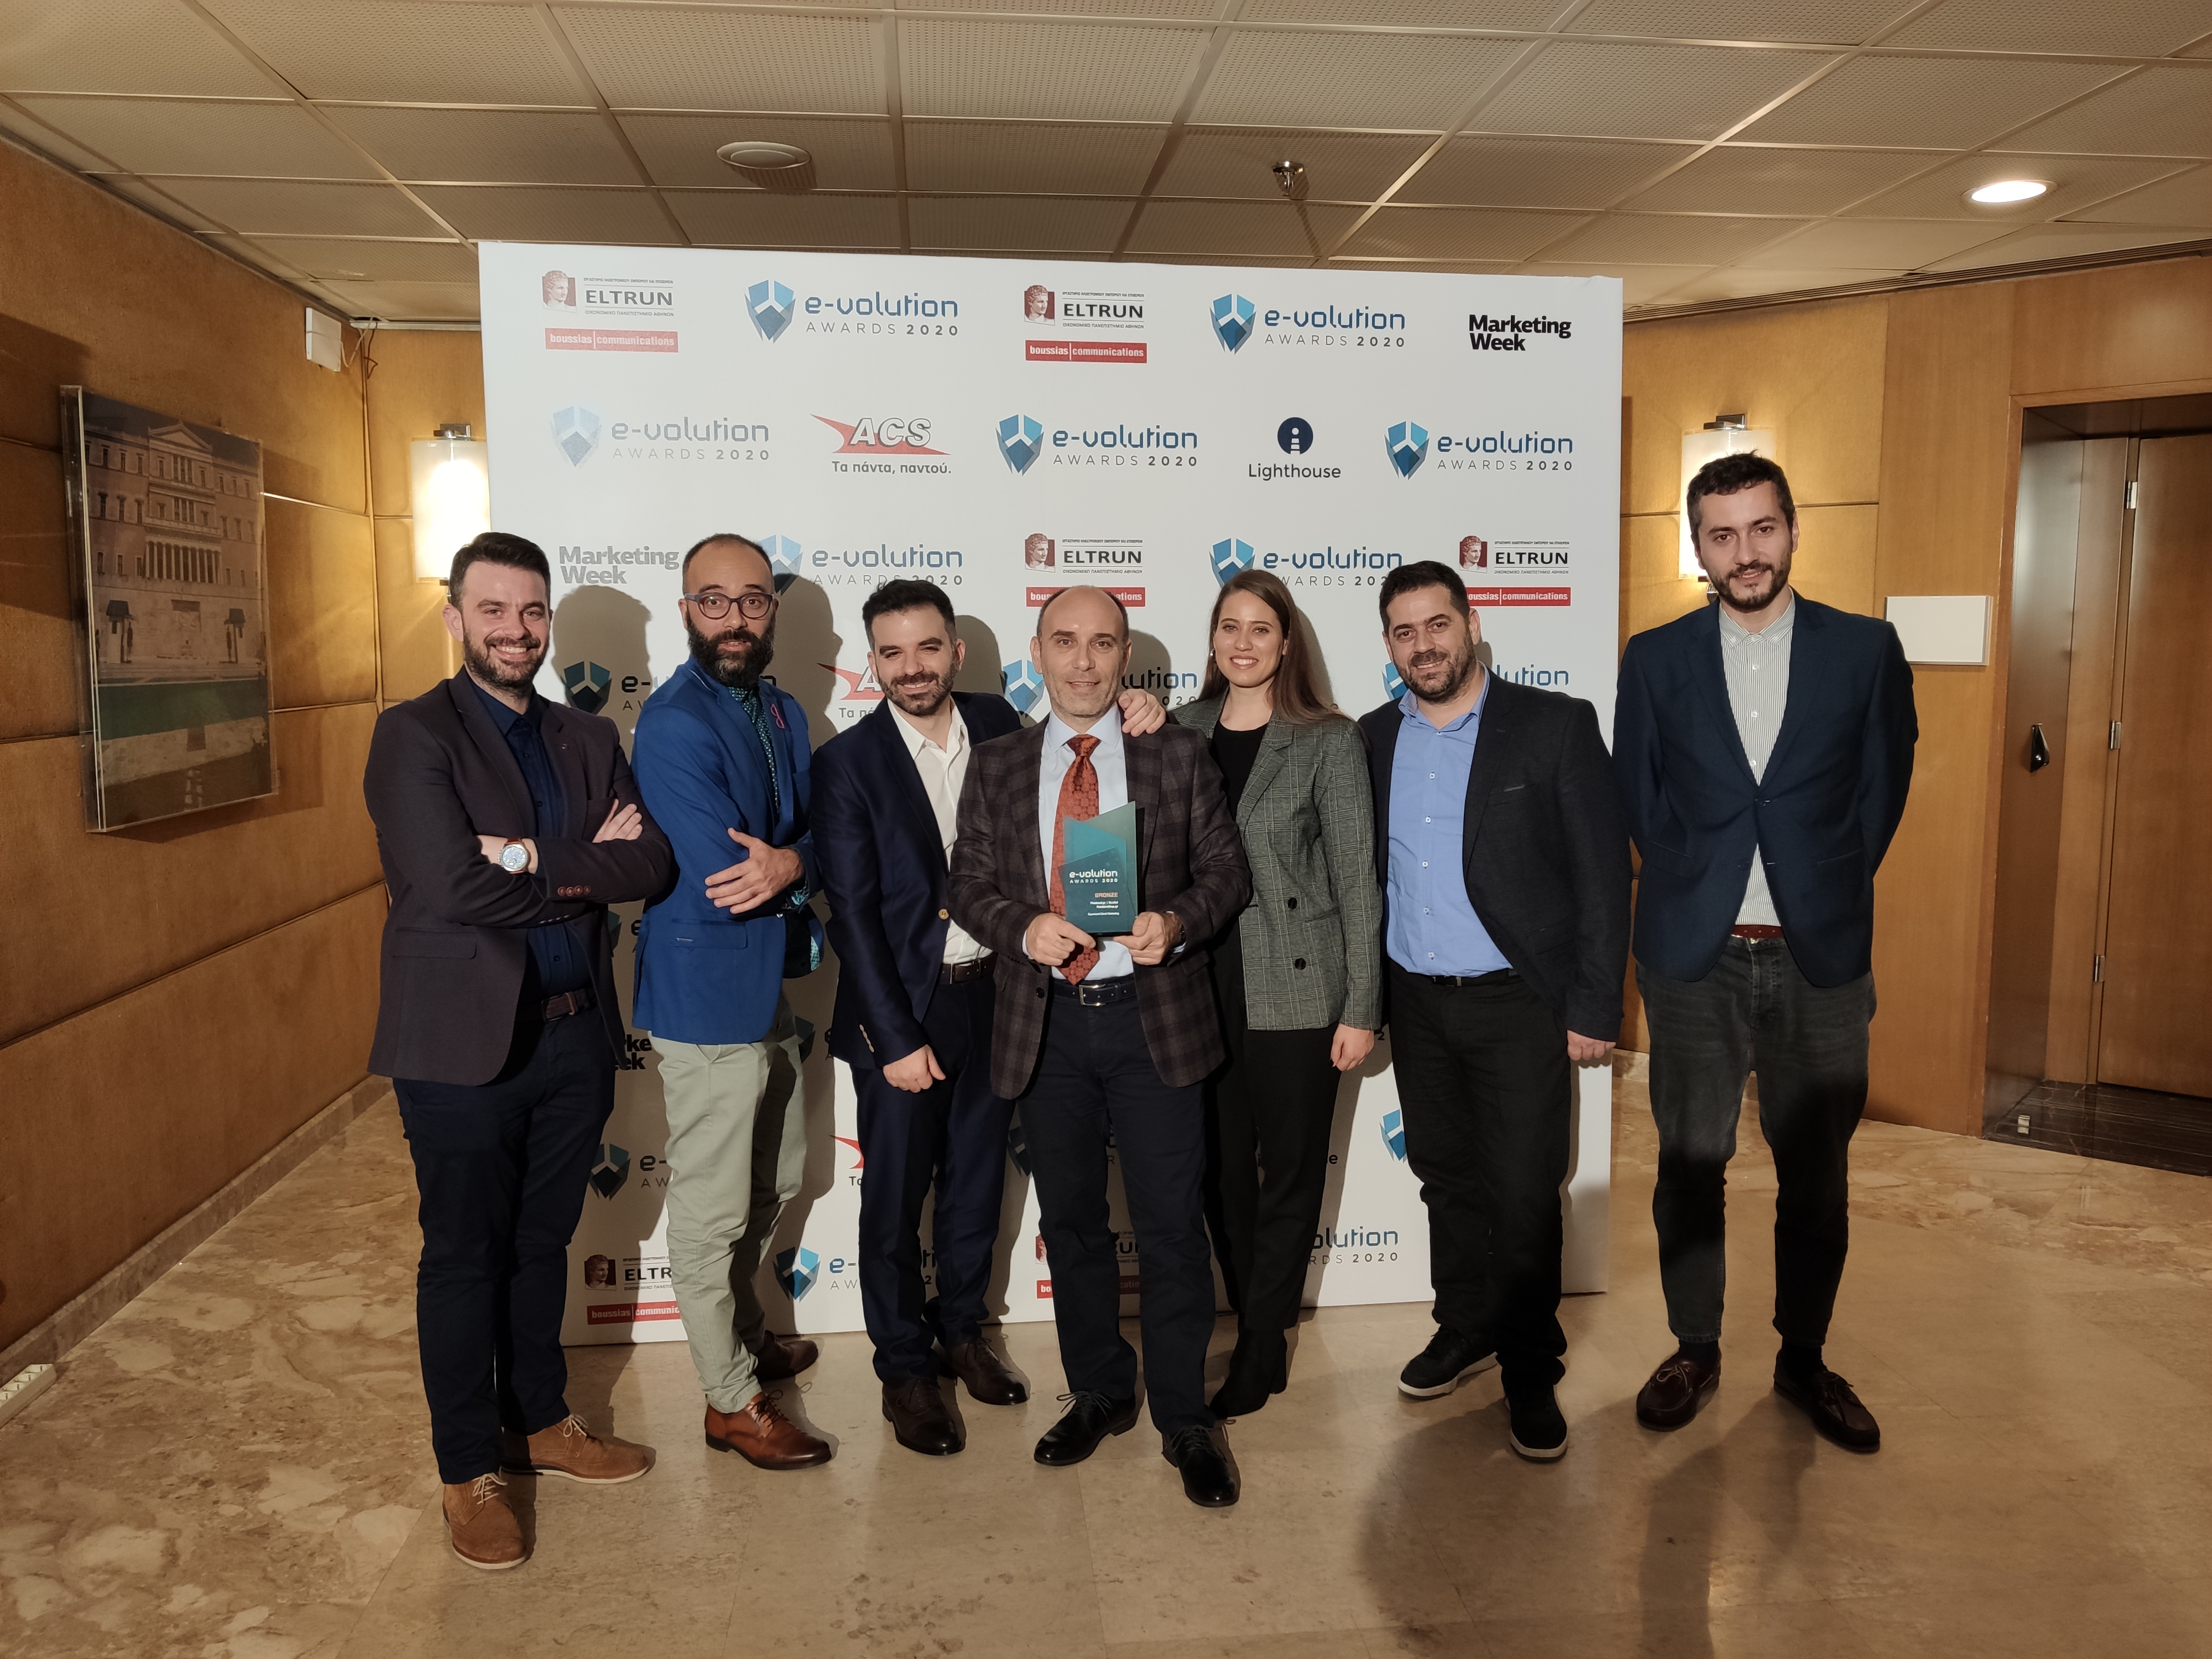 Νέο βραβείο για την Τρικαλινή Plushost.gr στα e-volution Awards για το Pandorashop.gr